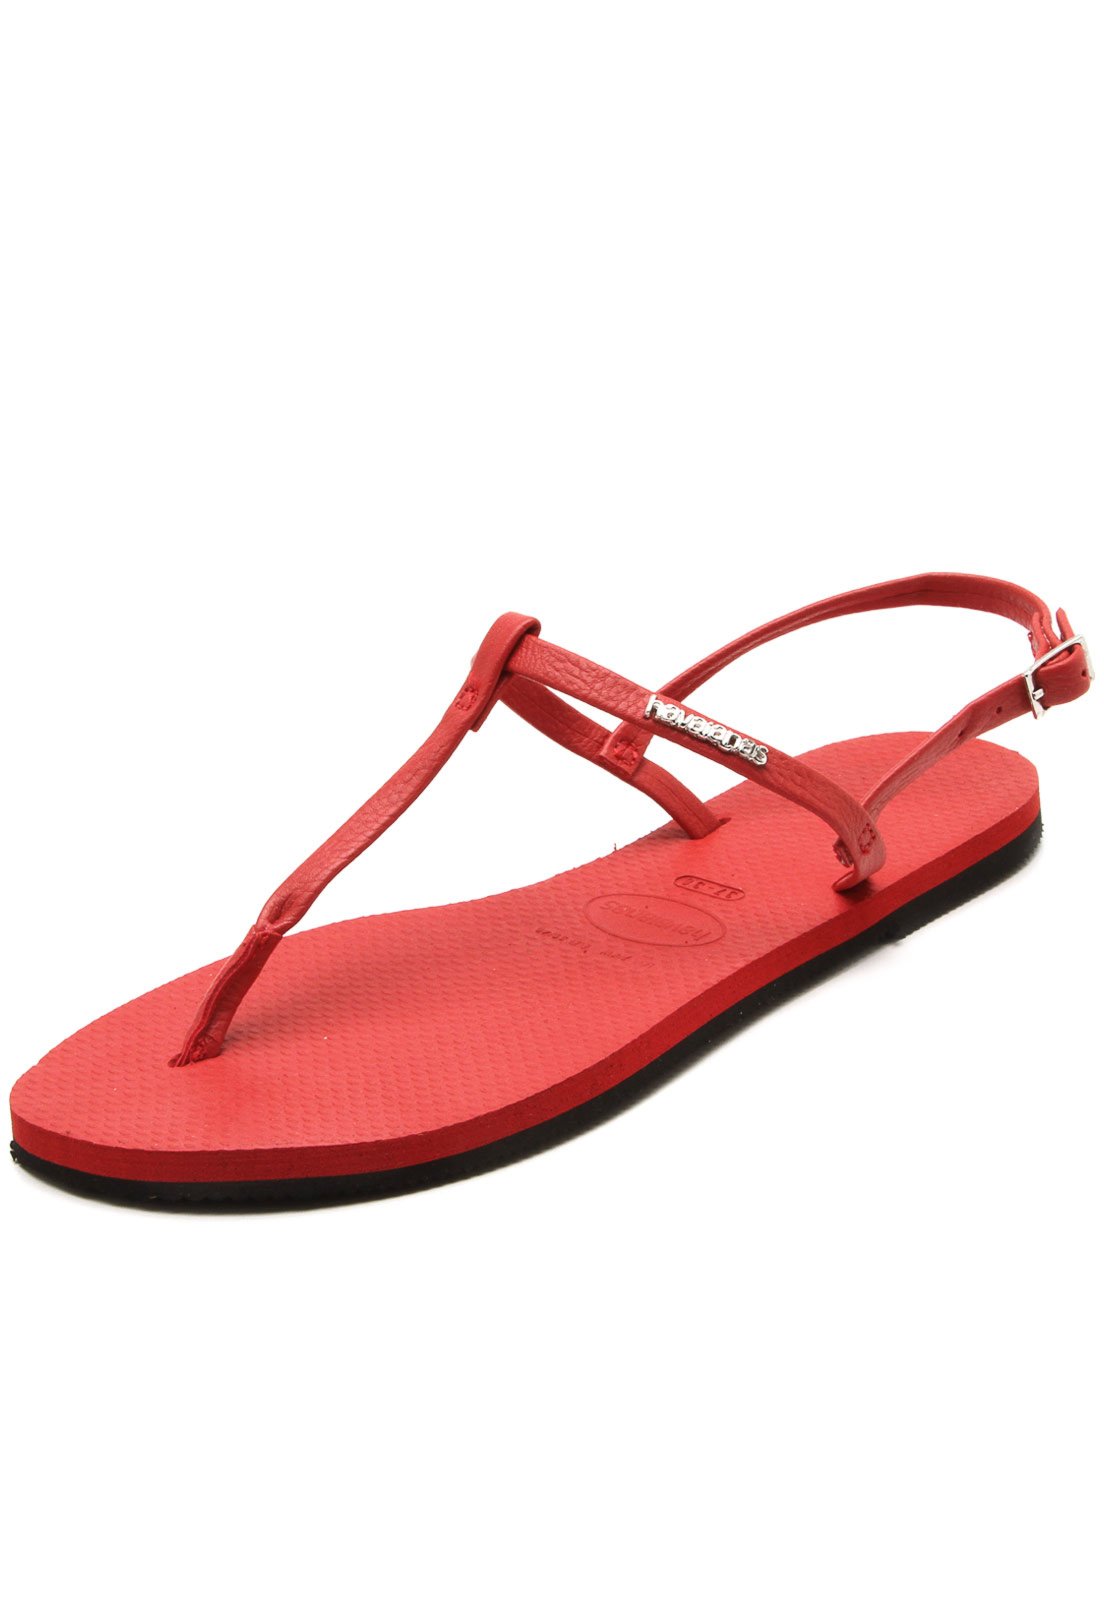 sandalia havaiana vermelha